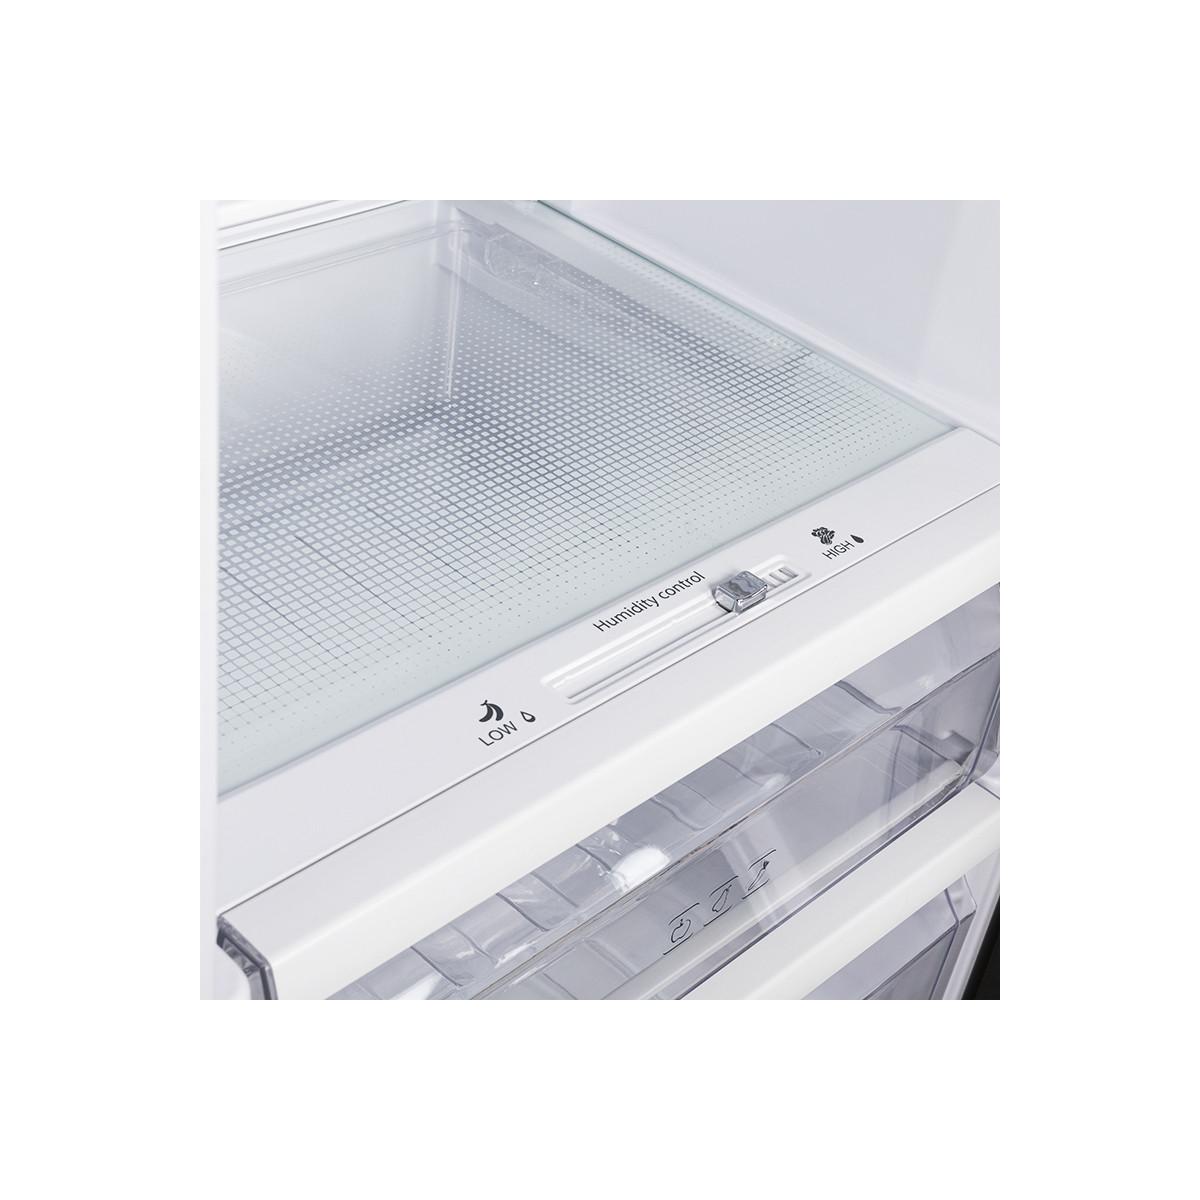 Amsta - aml330x - réfrigérateur - 1 porte - 330 litres - 41 db